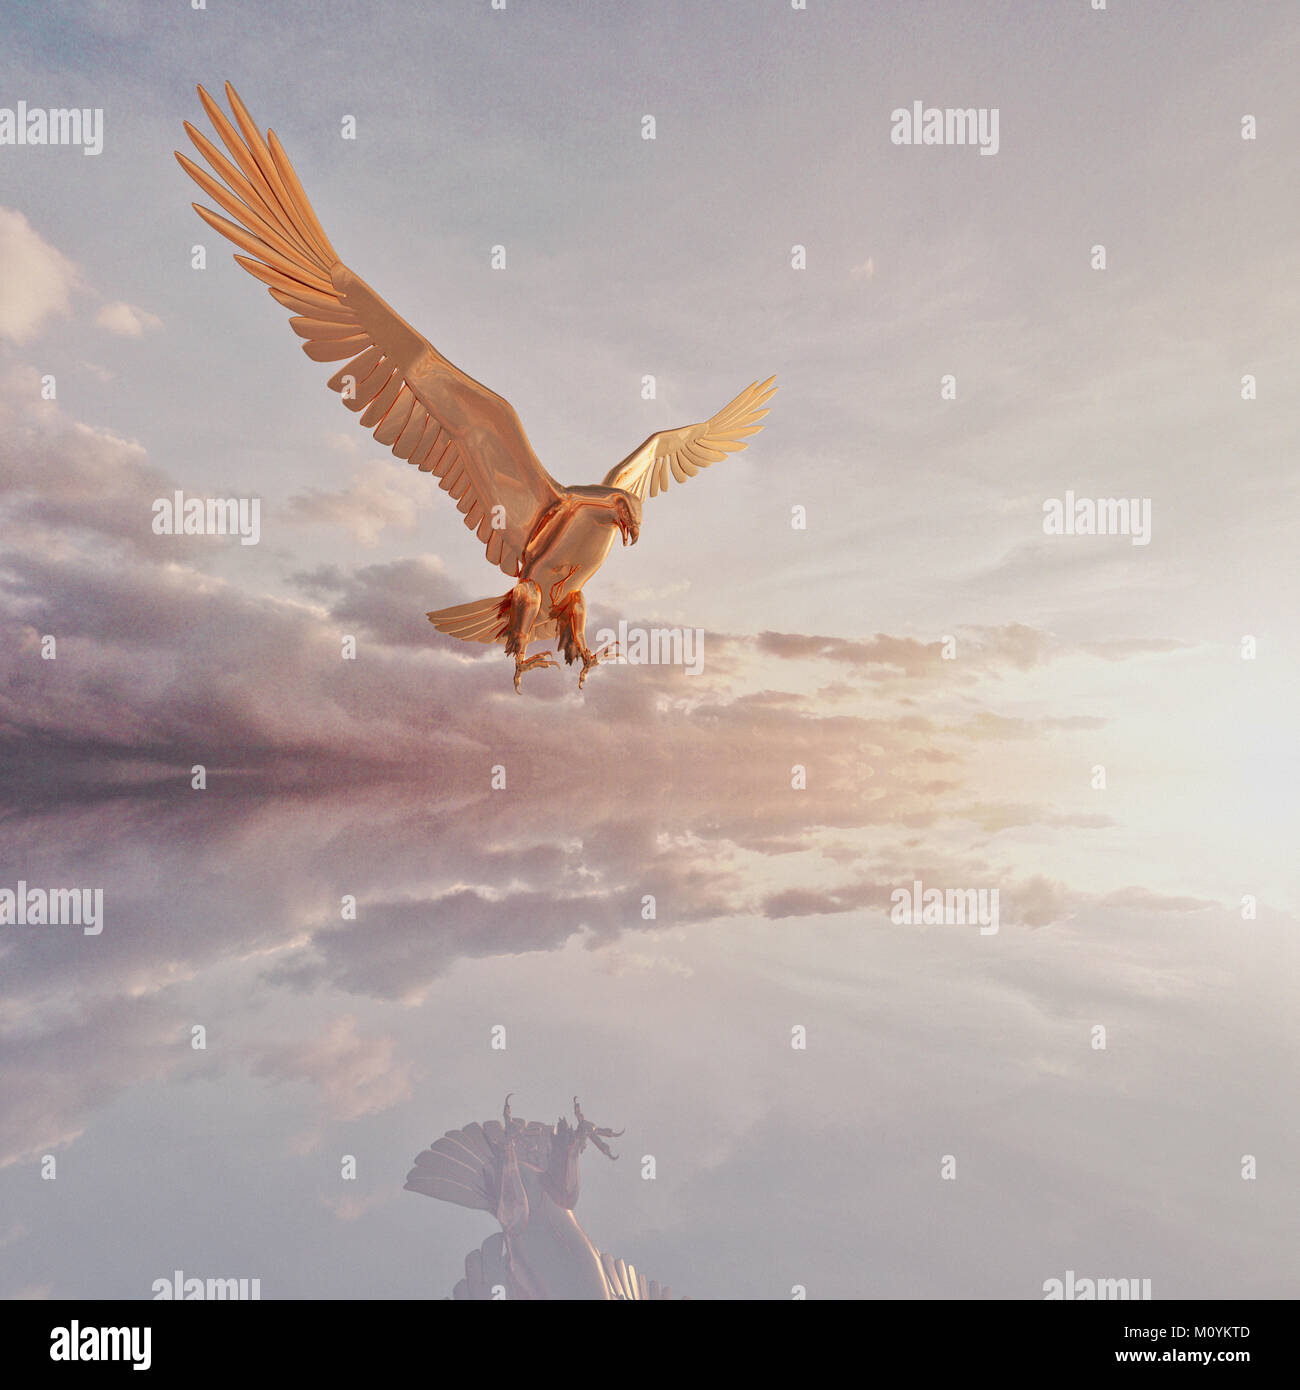 Reflet de eagle flying dans les nuages Banque D'Images